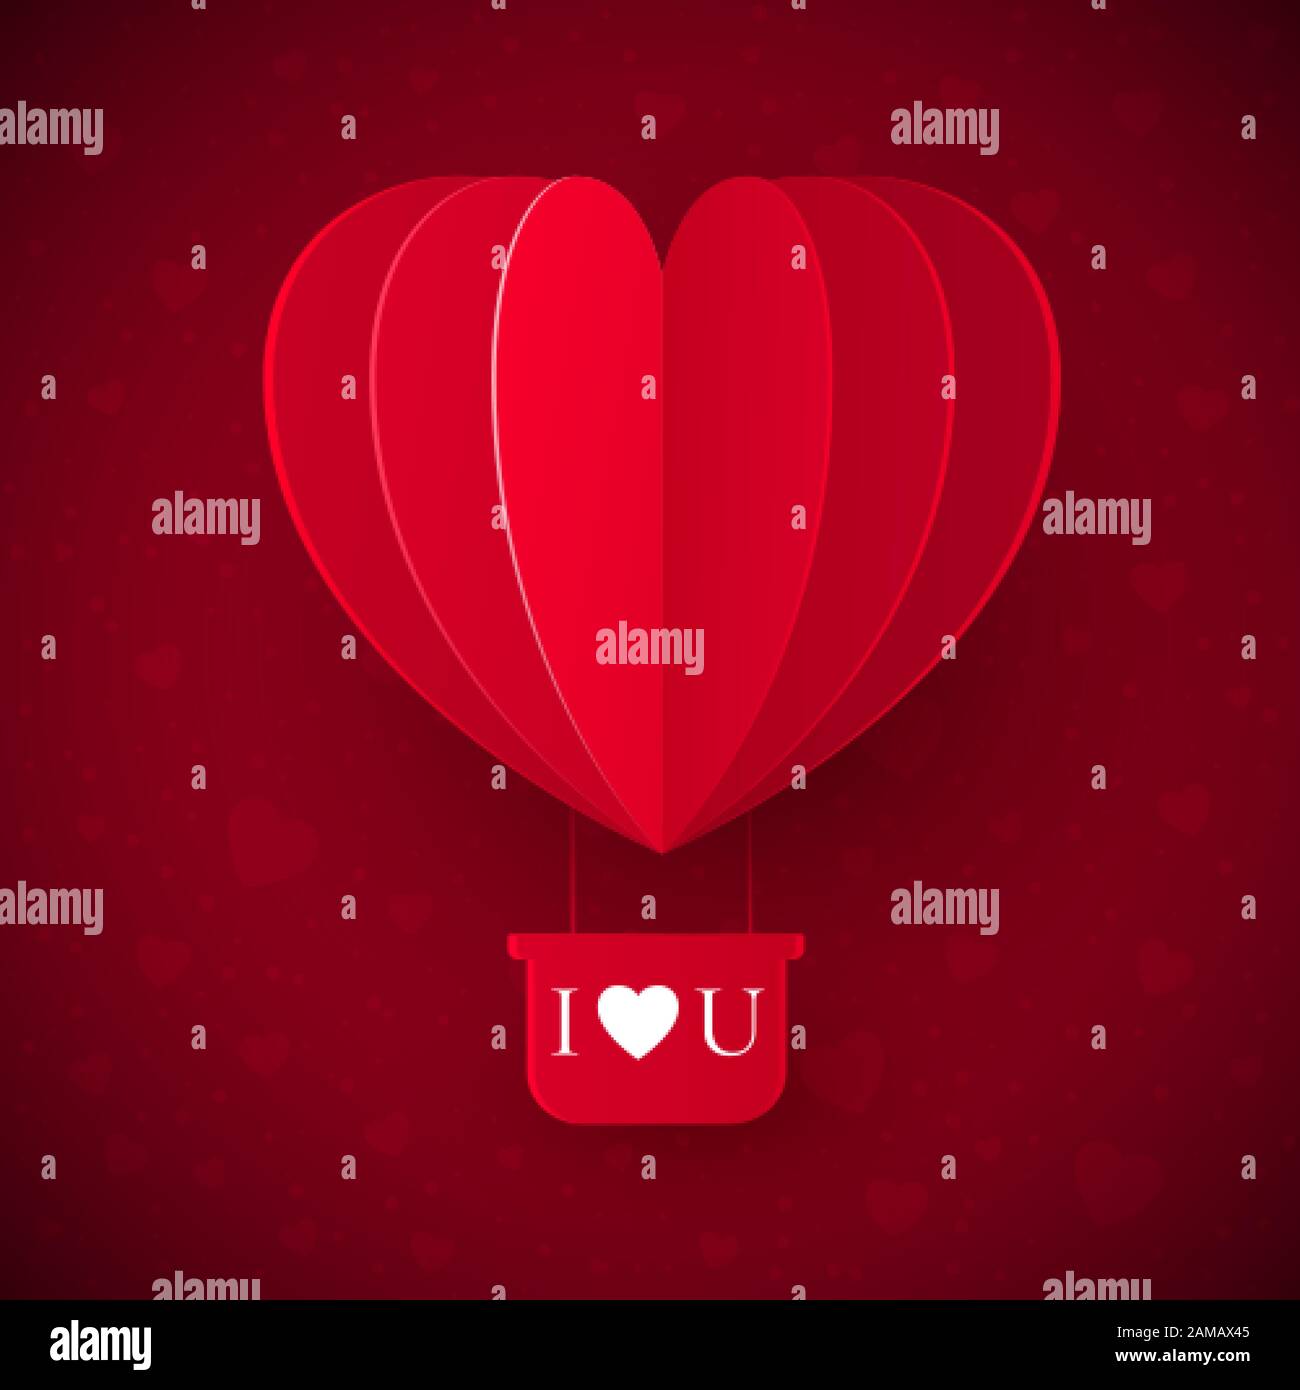 Valentinstag mit Papier geschnitten roter Herzform Ballon fliegen. Valentinstags-Liebesnachricht - Ich liebe Dich. Vektorgrafiken Stock Vektor